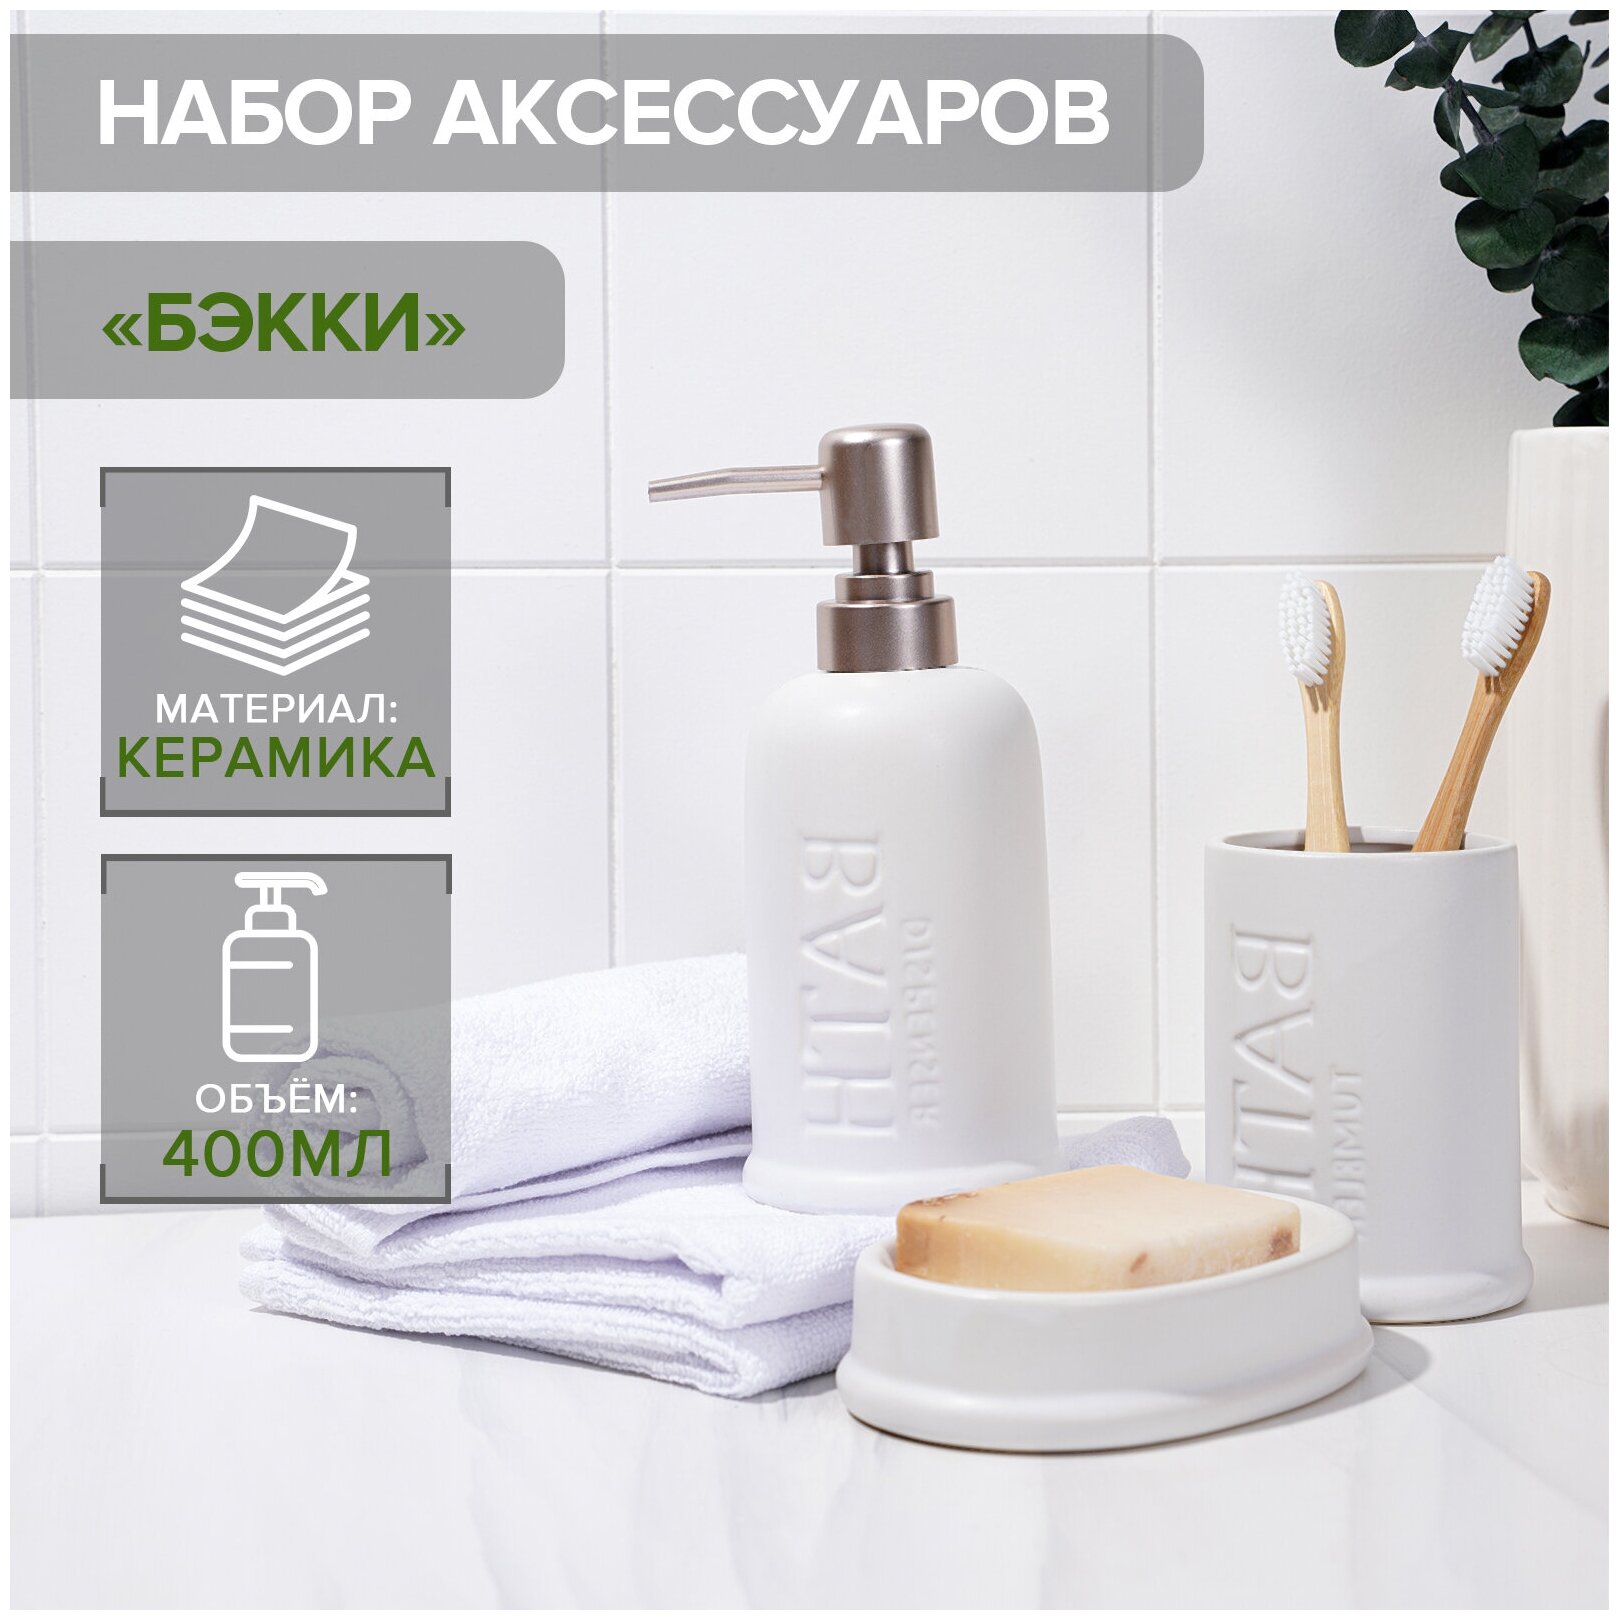 Набор аксессуаров для ванной комнаты SAVANNA «Бэкки» 3 предмета (мыльница дозатор для мыла 400 мл стакан) цвет белый